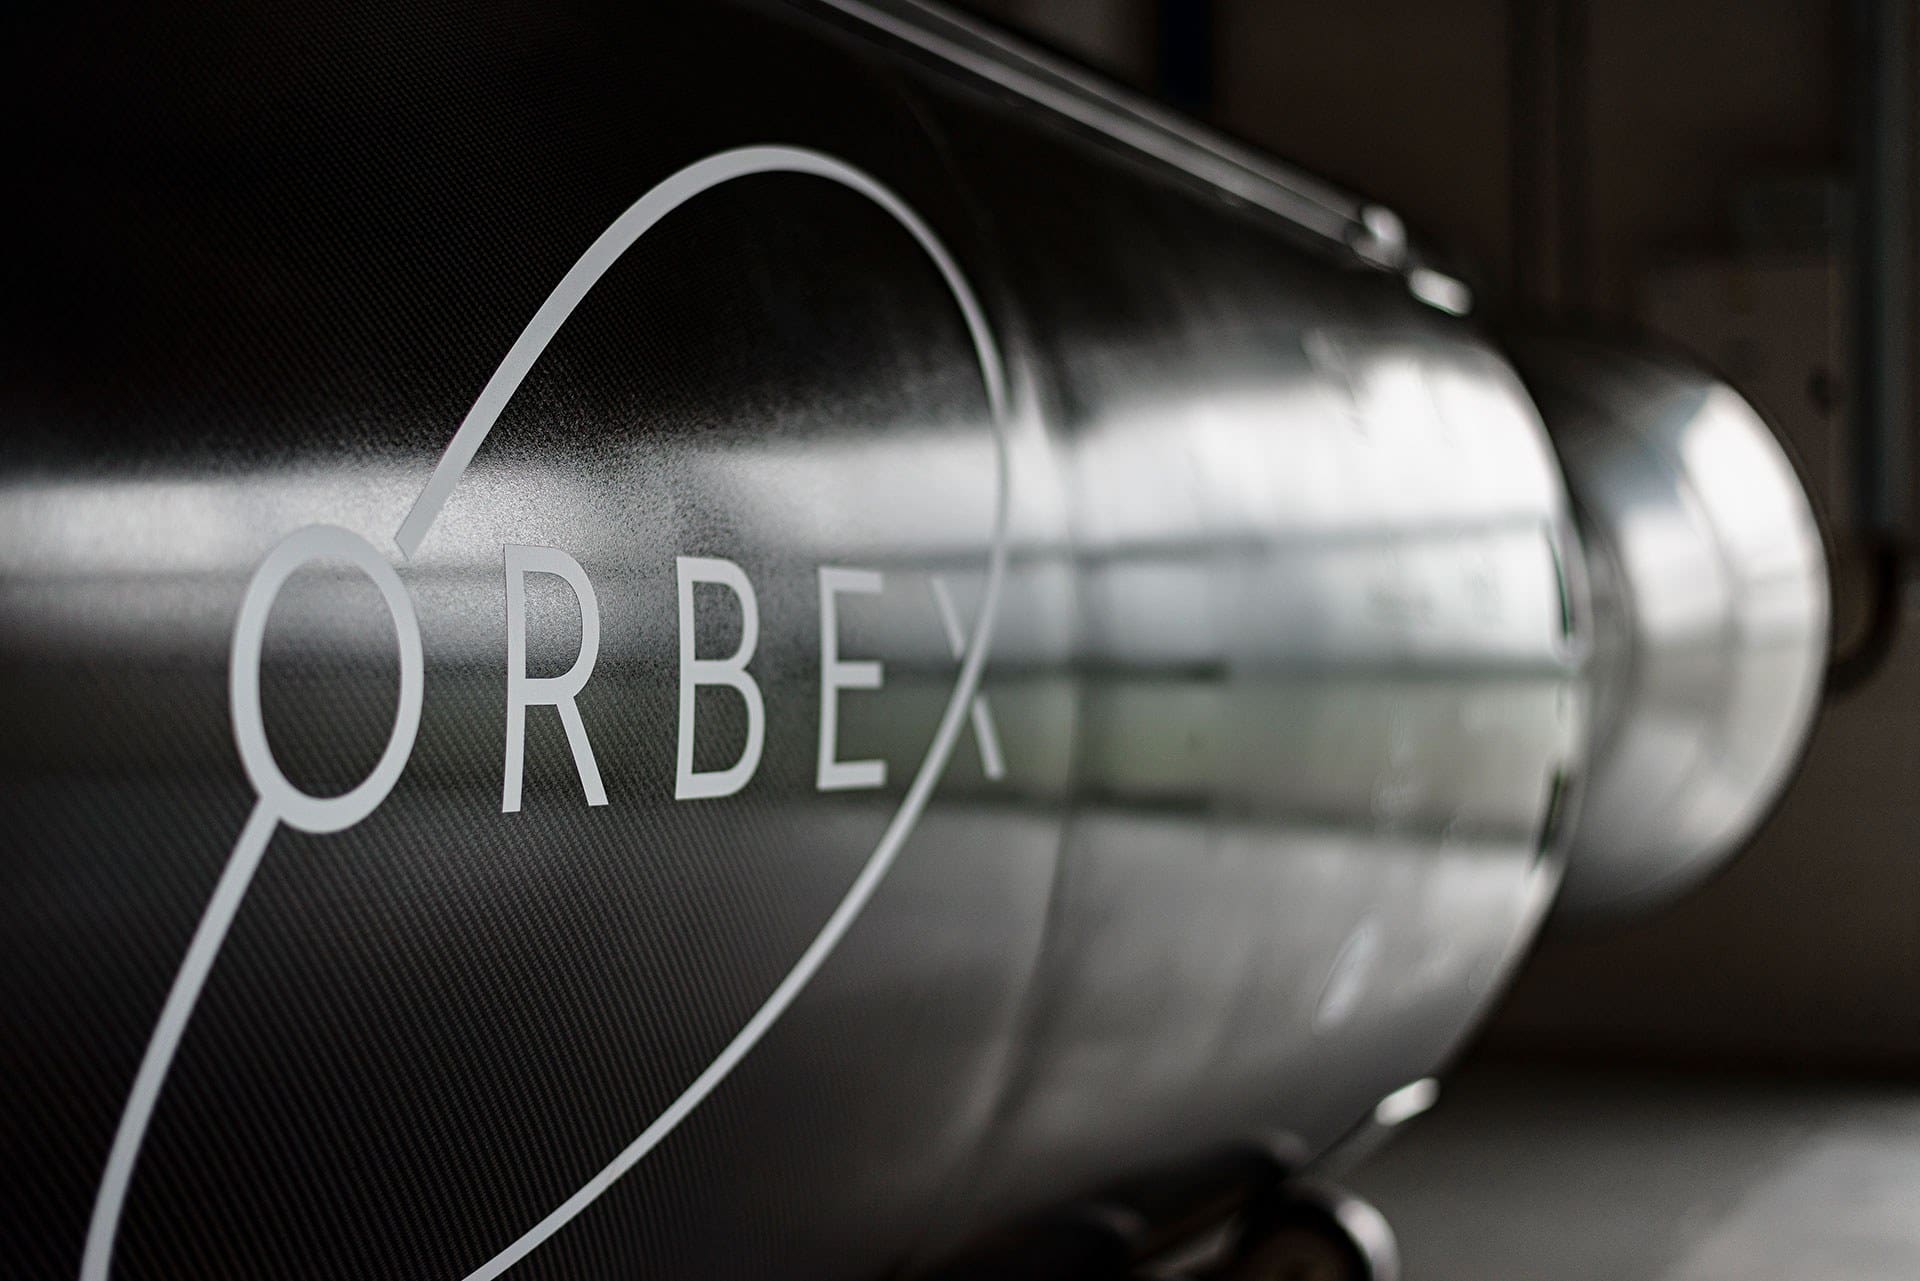 A close up of an Orbex rocket.